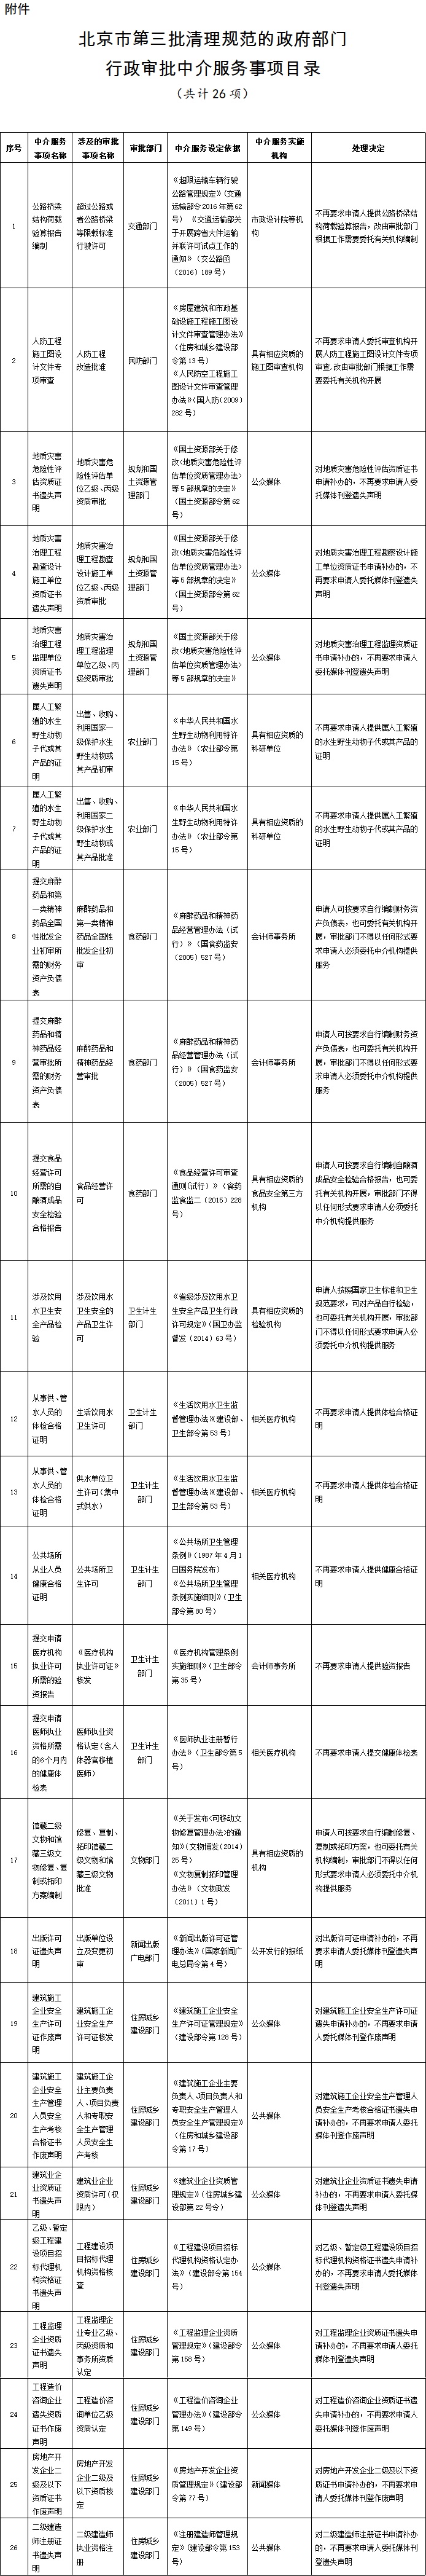 附件：北京市第三批清理规范的政府部门行政审批中介服务事项目录.jpg